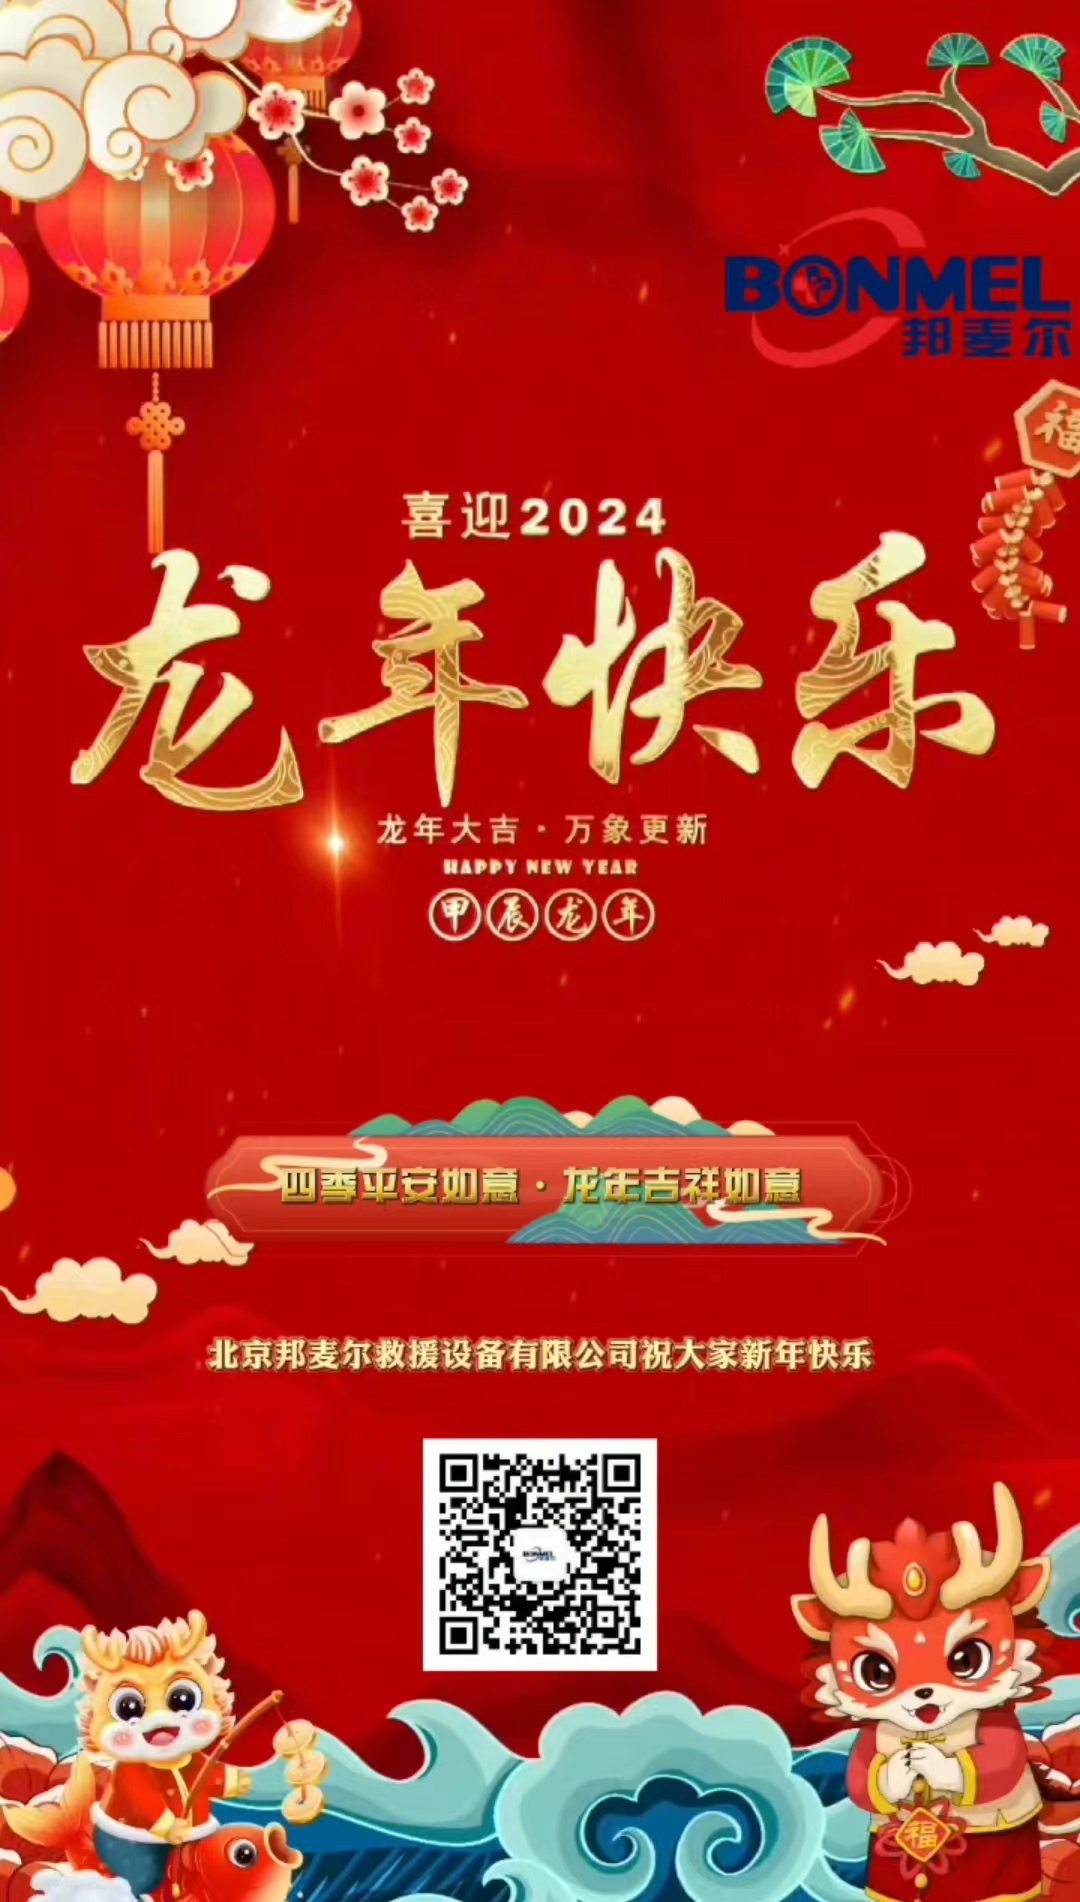 北京邦麦尔救援设备有限公司给大家拜年了！